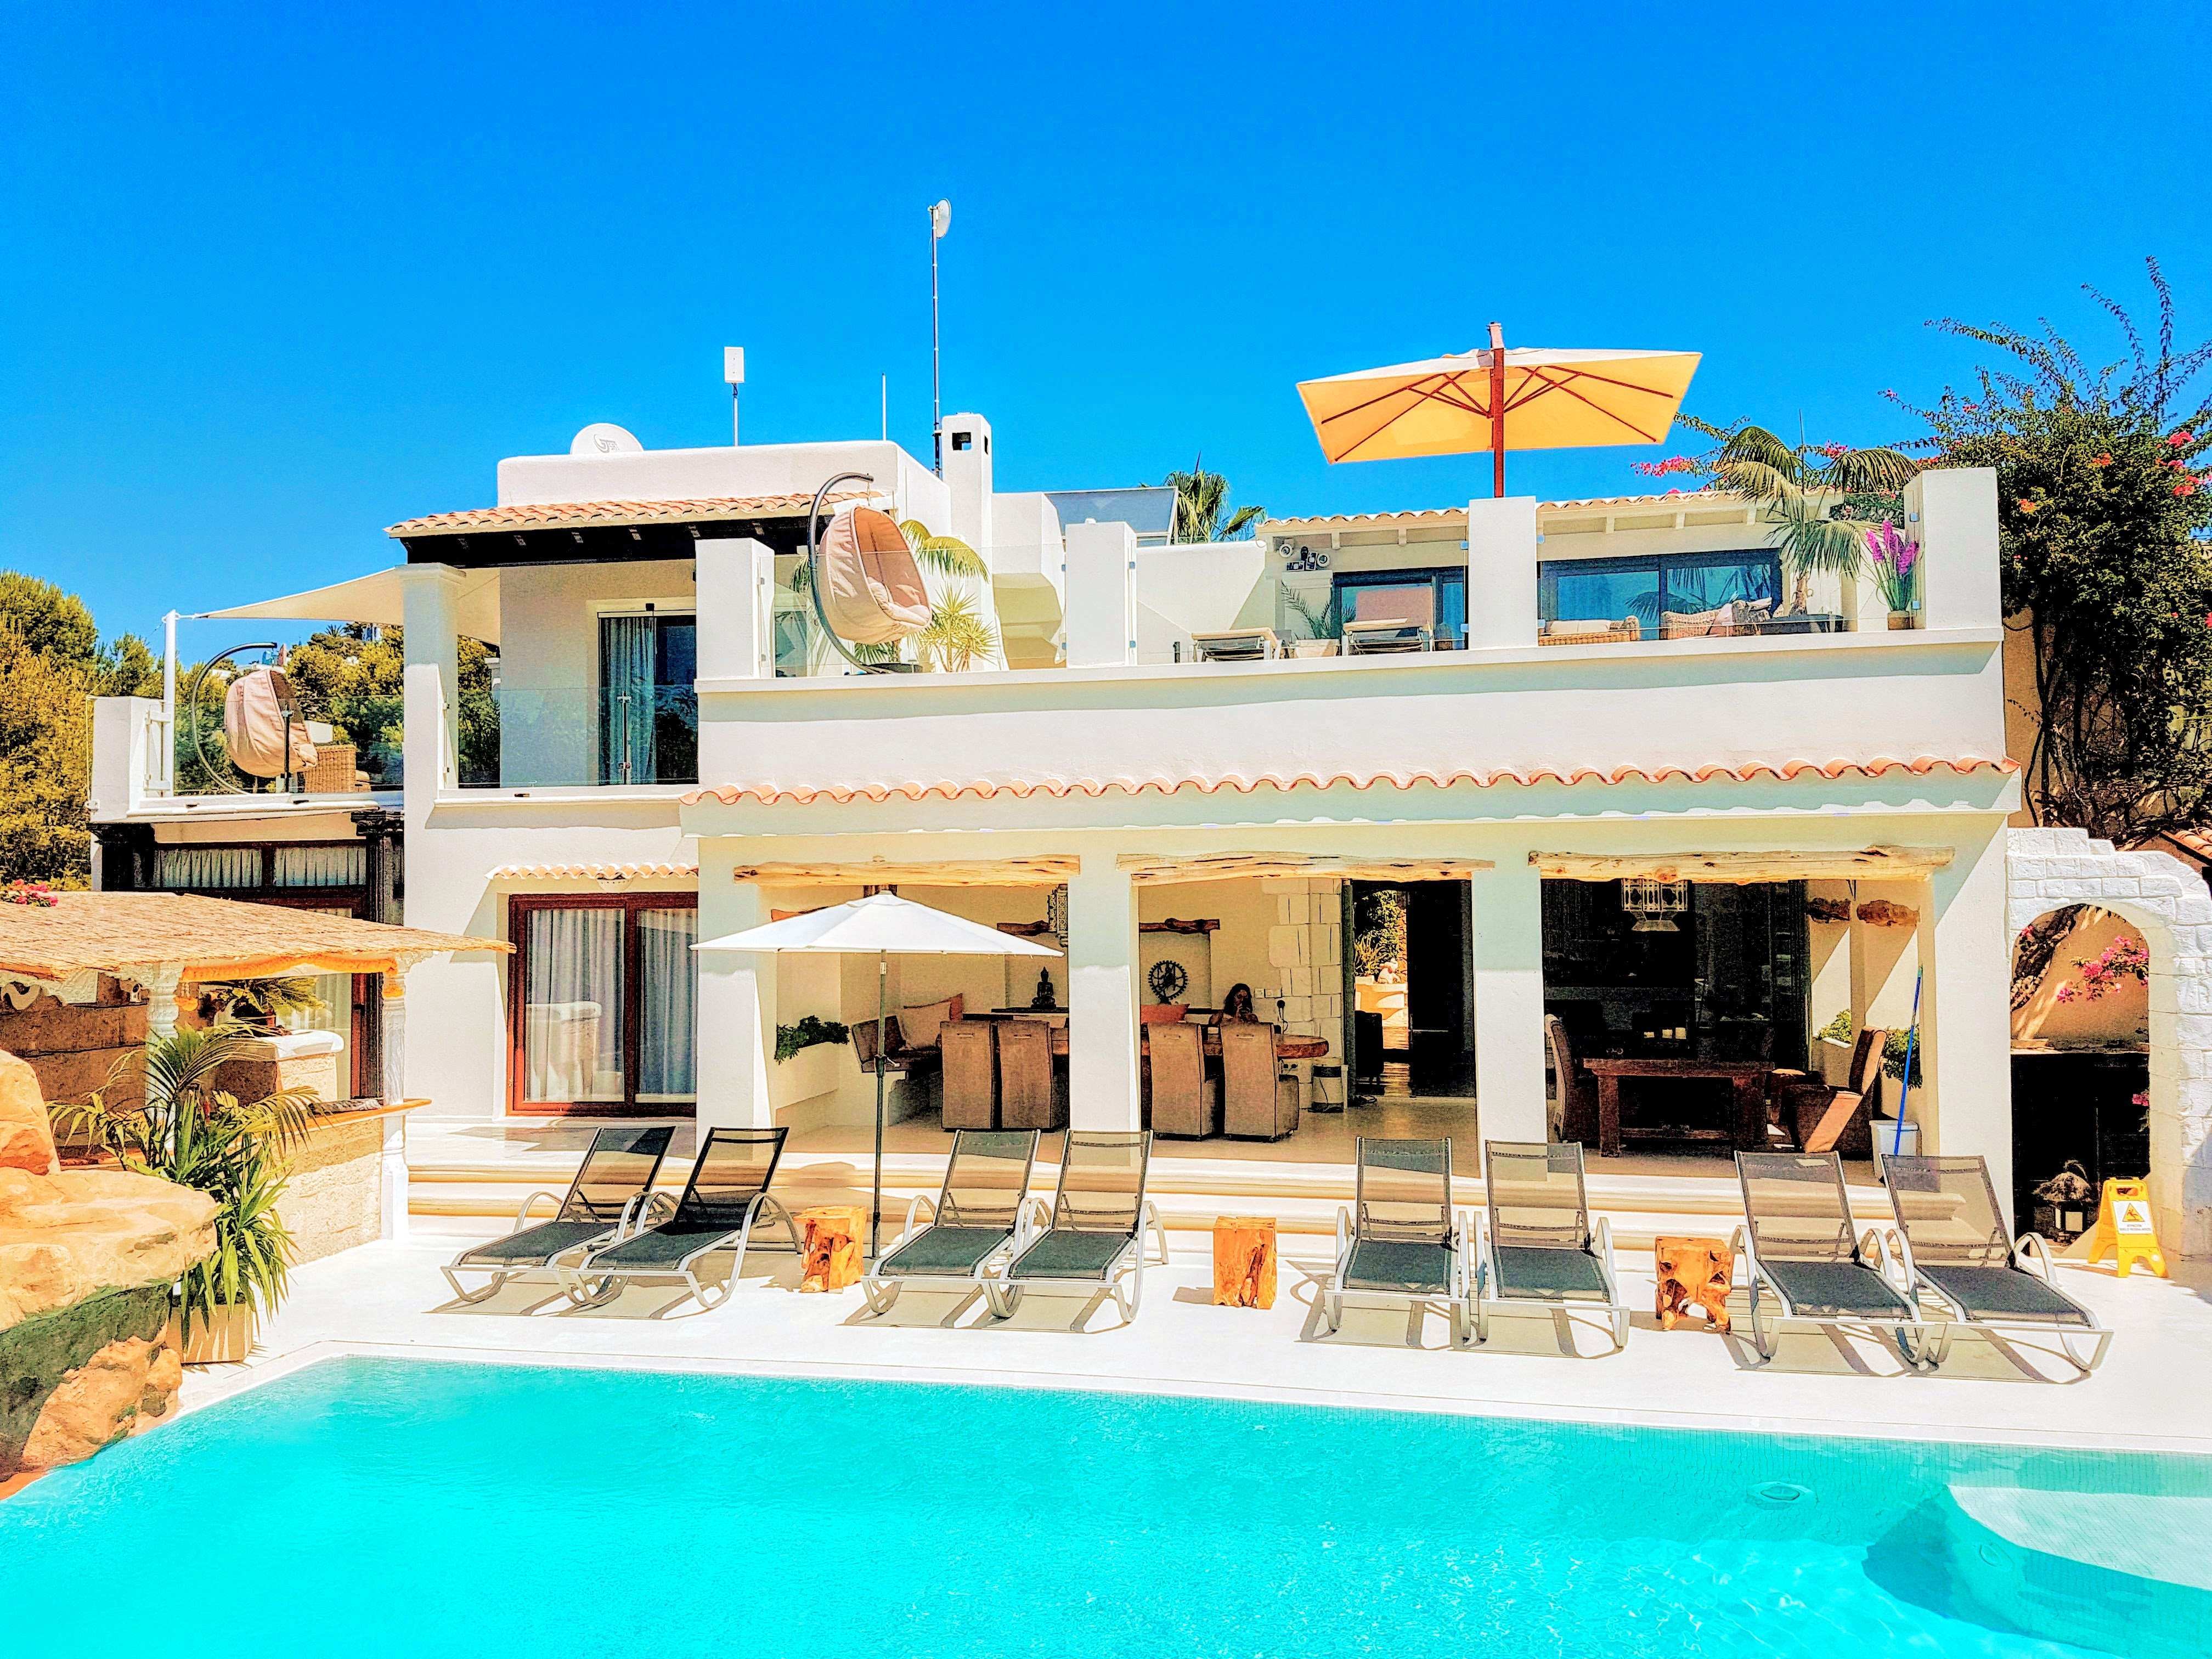 Luxury villa in Ibiza on the seafront